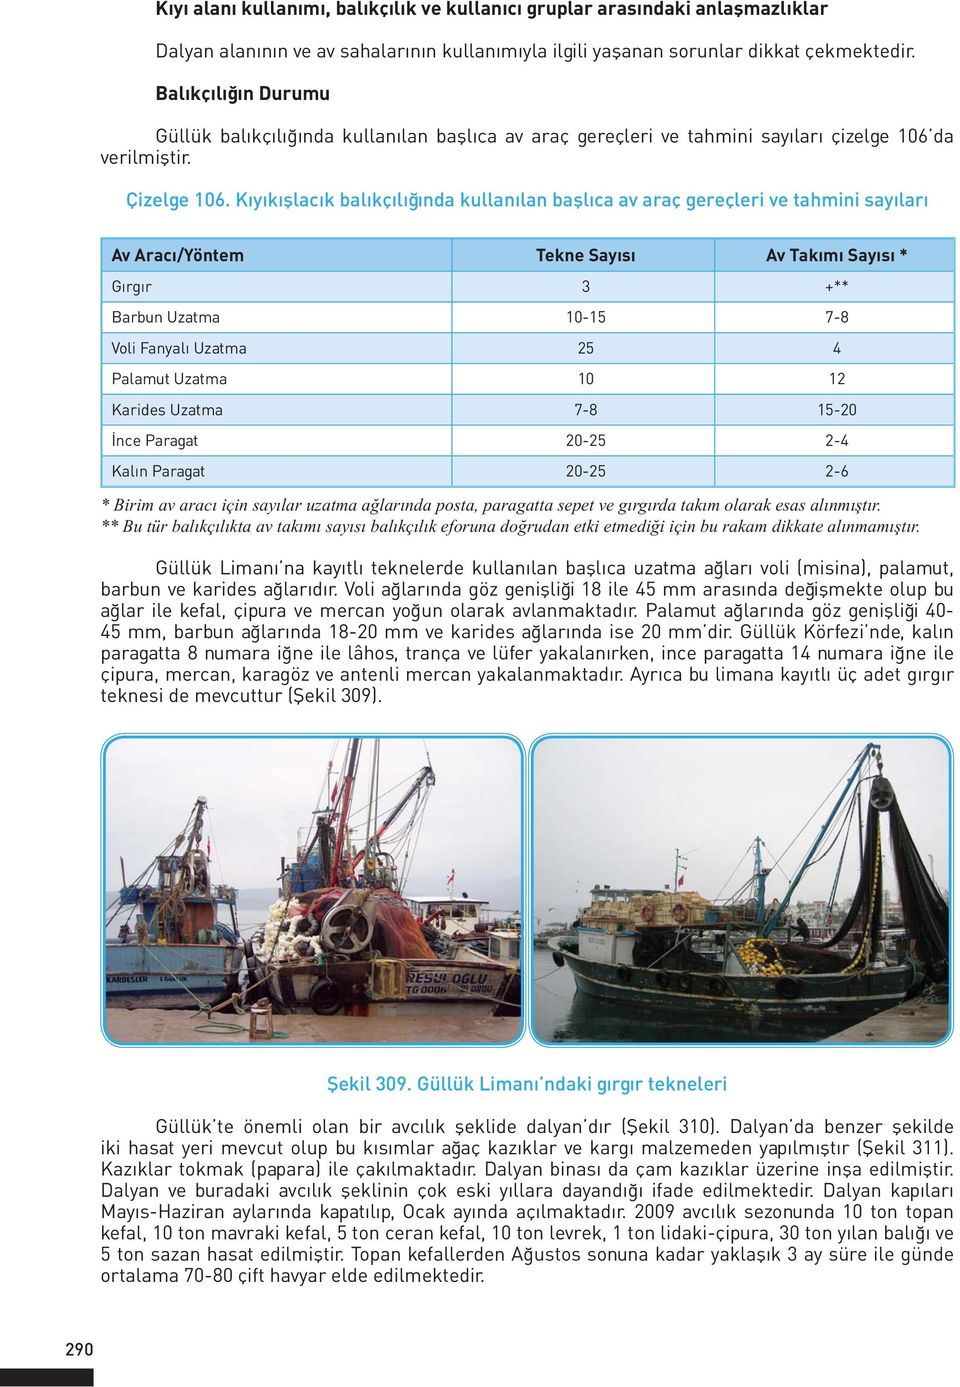 Kıyıkışlacık balıkçılığında kullanılan başlıca av araç gereçleri ve tahmini sayıları Av Aracı/Yöntem Tekne Sayısı Av Takımı Sayısı * Gırgır 3 +** Barbun Uzatma 10-15 7-8 Voli Fanyalı Uzatma 25 4